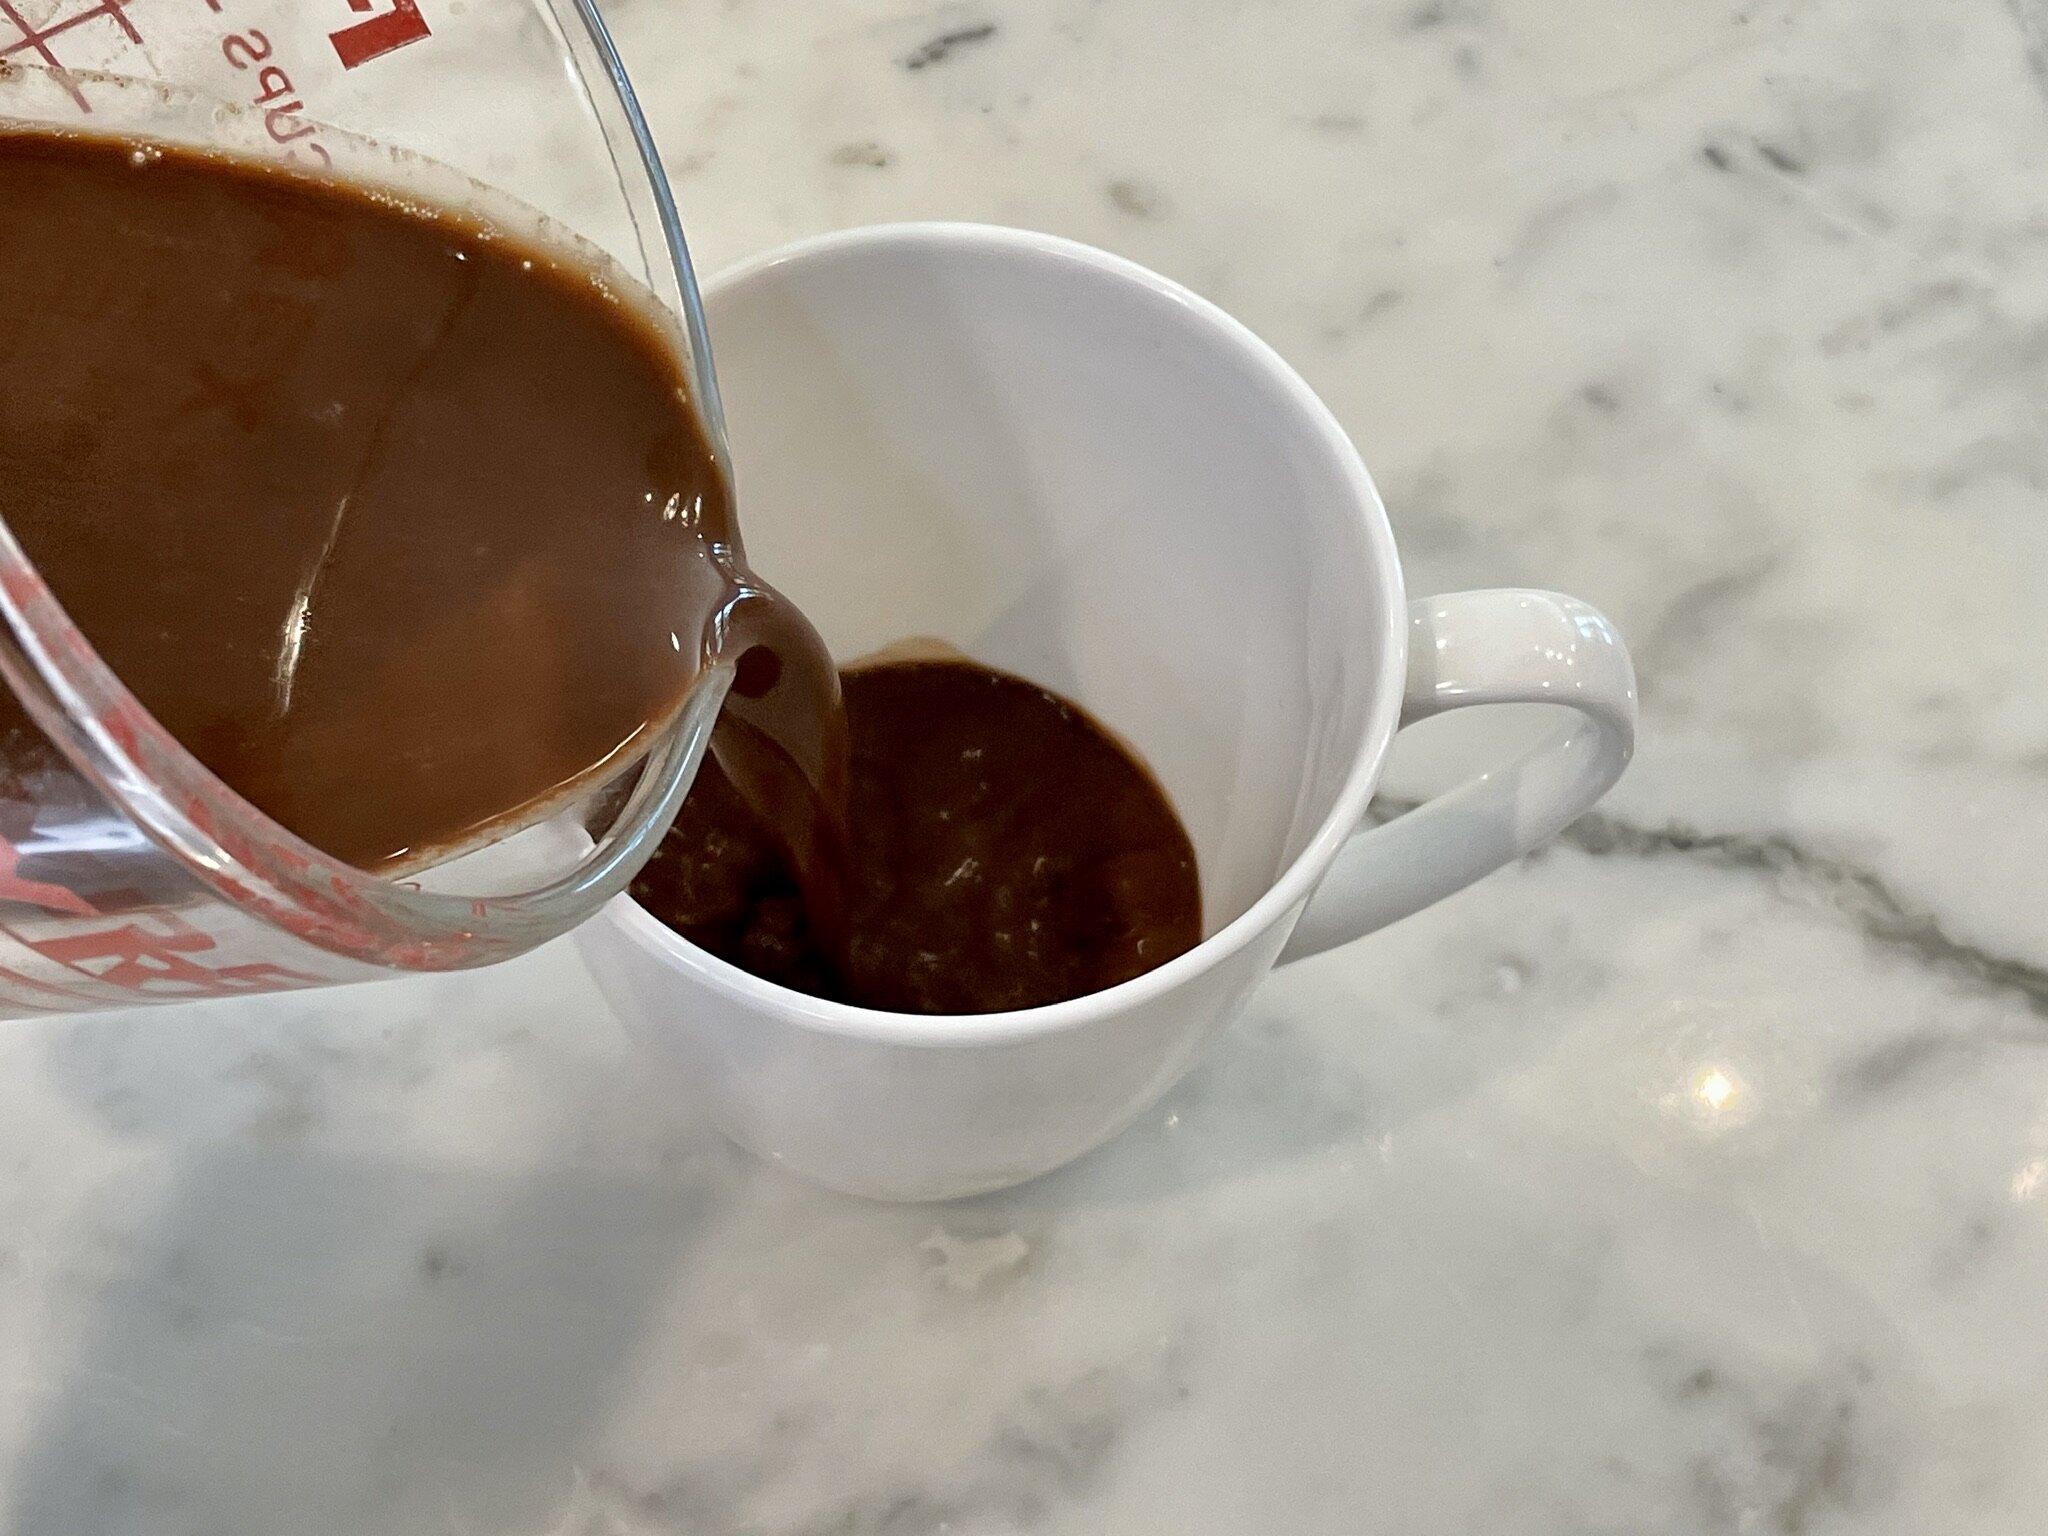 a) Pour half into mug.